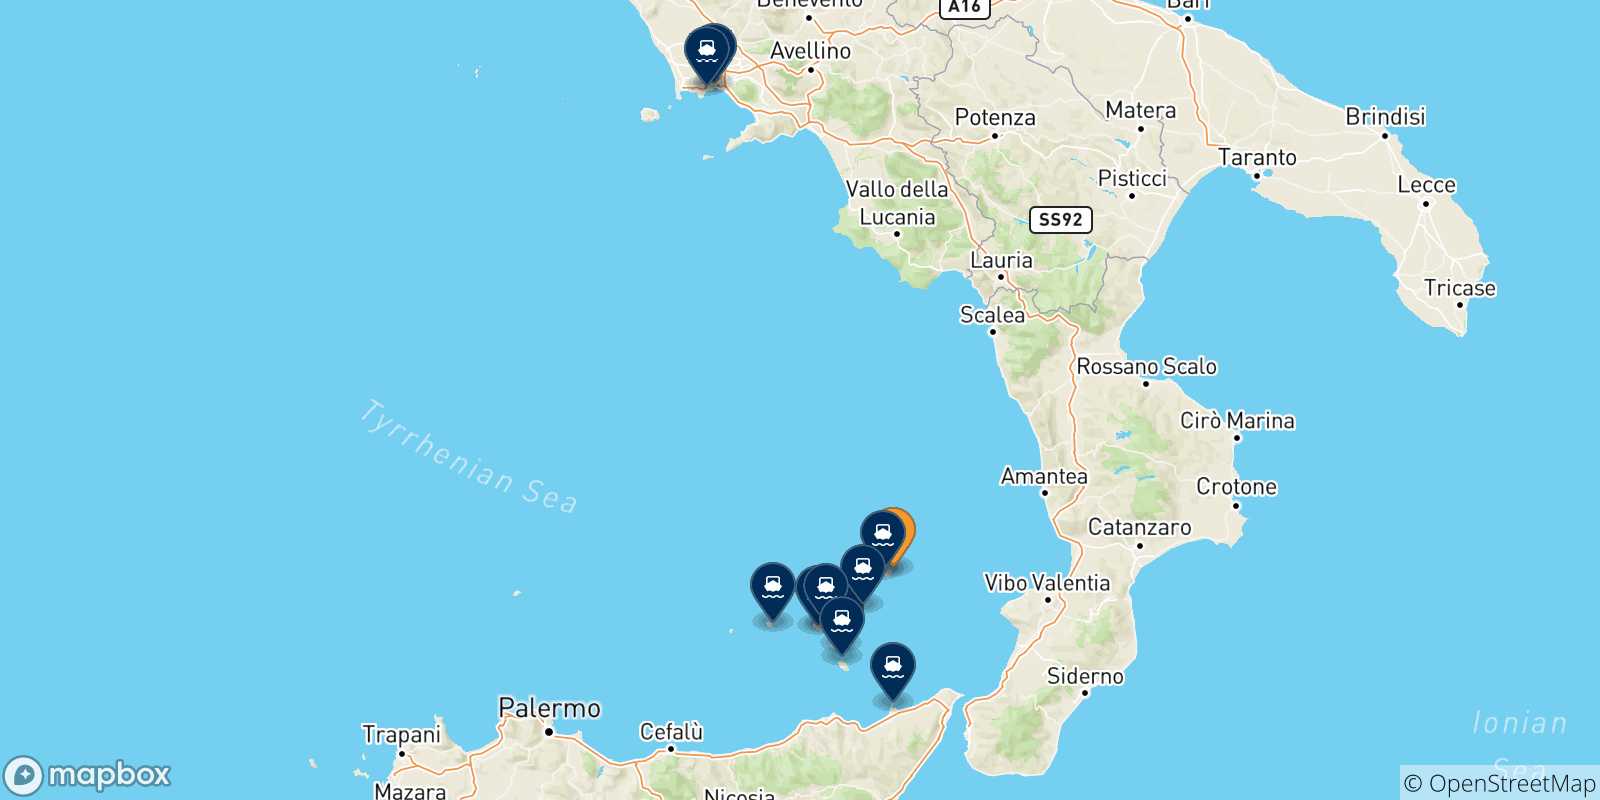 Mappa delle possibili rotte tra Stromboli e l'Italia